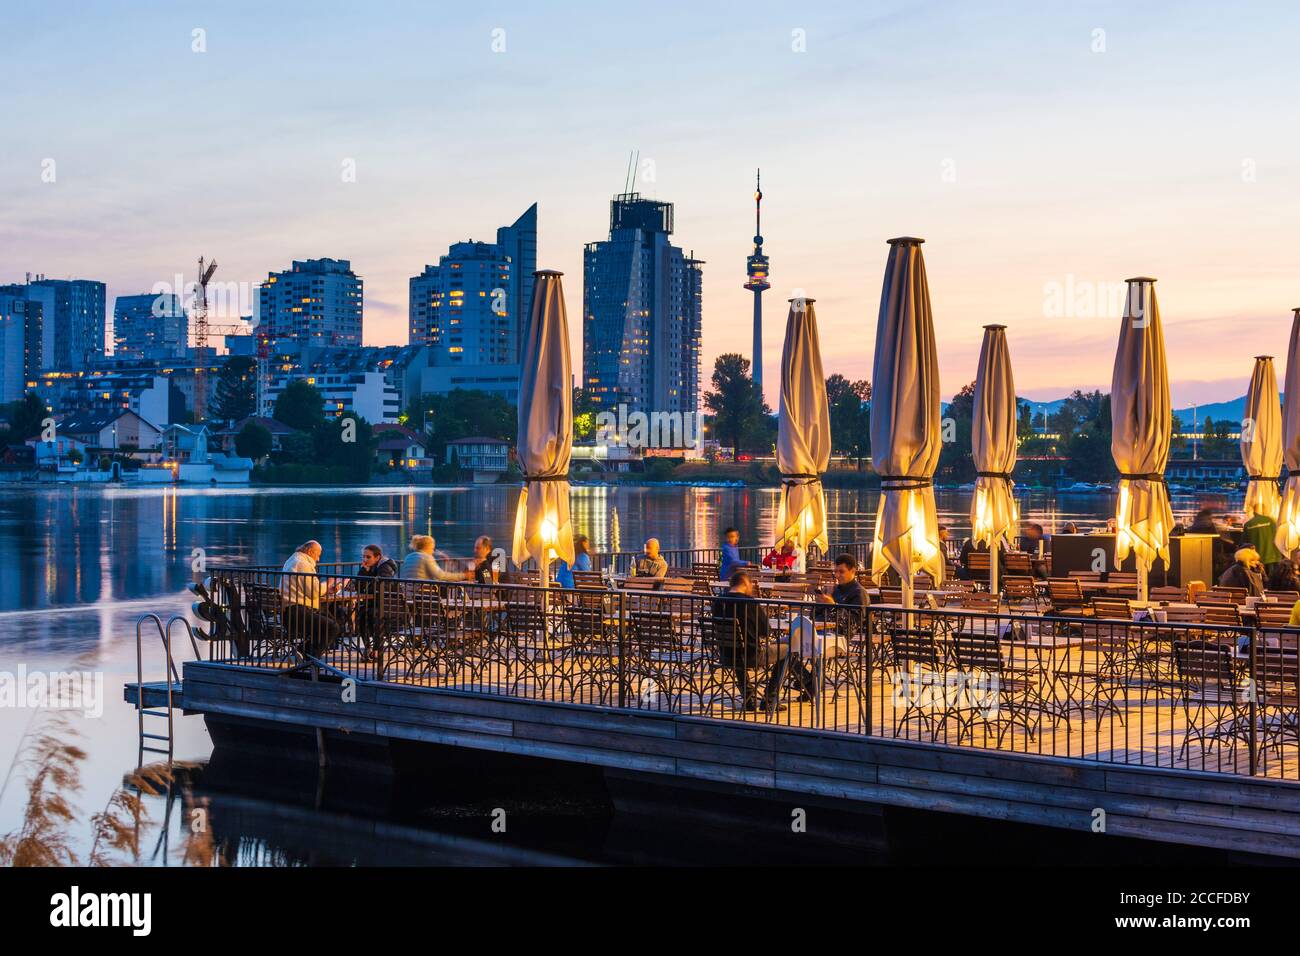 Wien, Alte Donau, schwimmendes Restaurant 'Strandcafe' nun nach Schließung der Corona geöffnet, Häuser der Donaucity, DC Tower 1, Donauturm in 2 Stockfoto